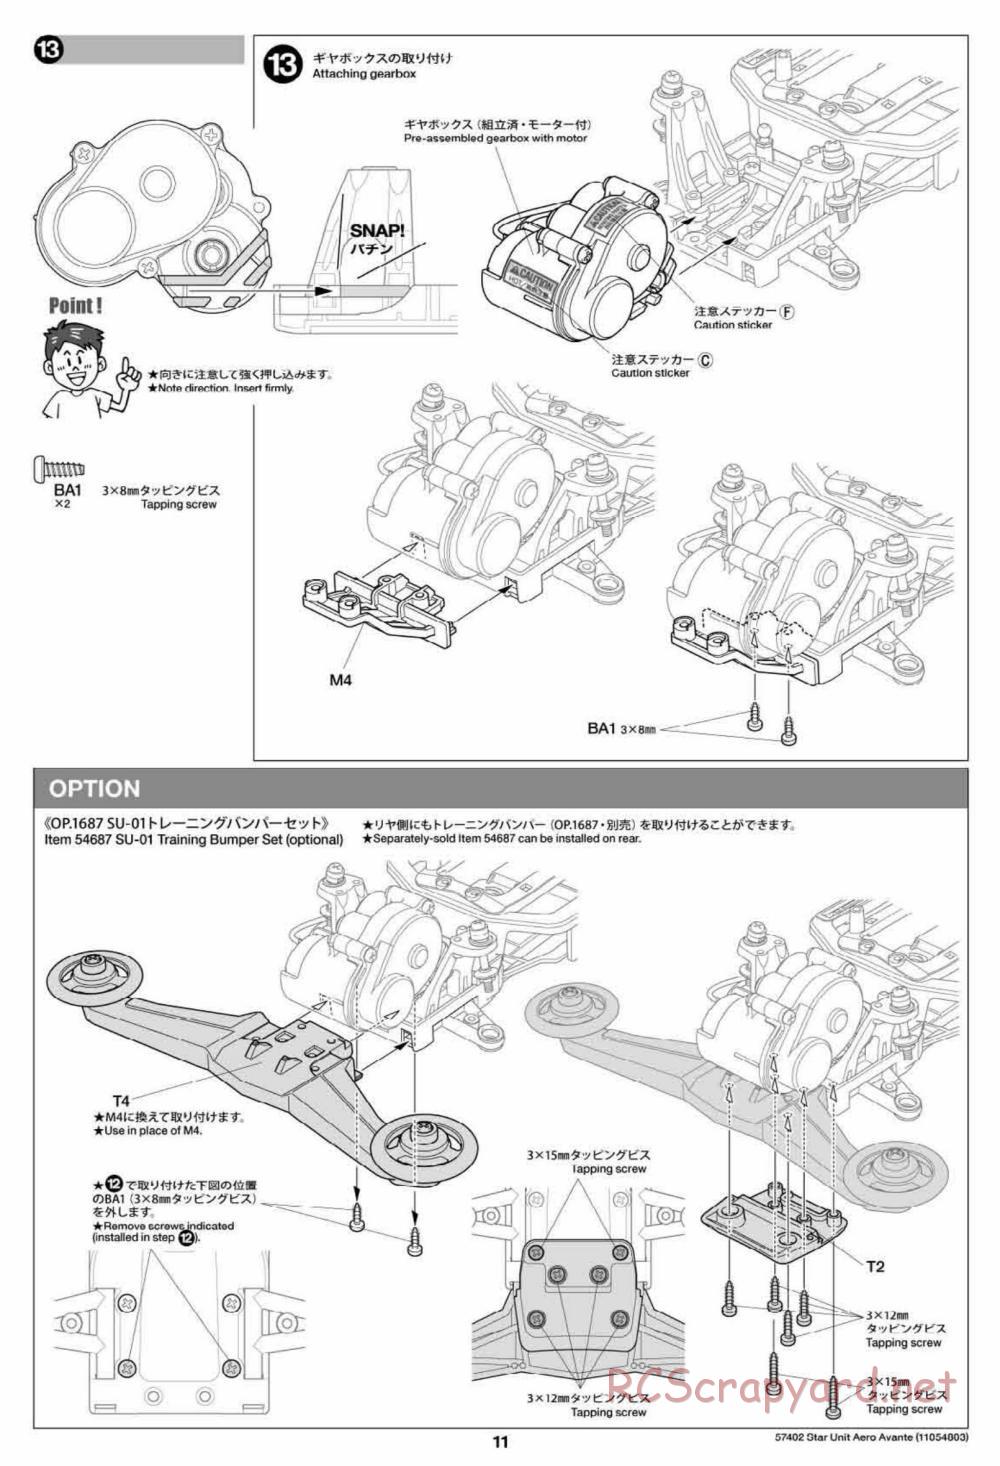 Tamiya - Aero Avante Chassis - Manual - Page 11